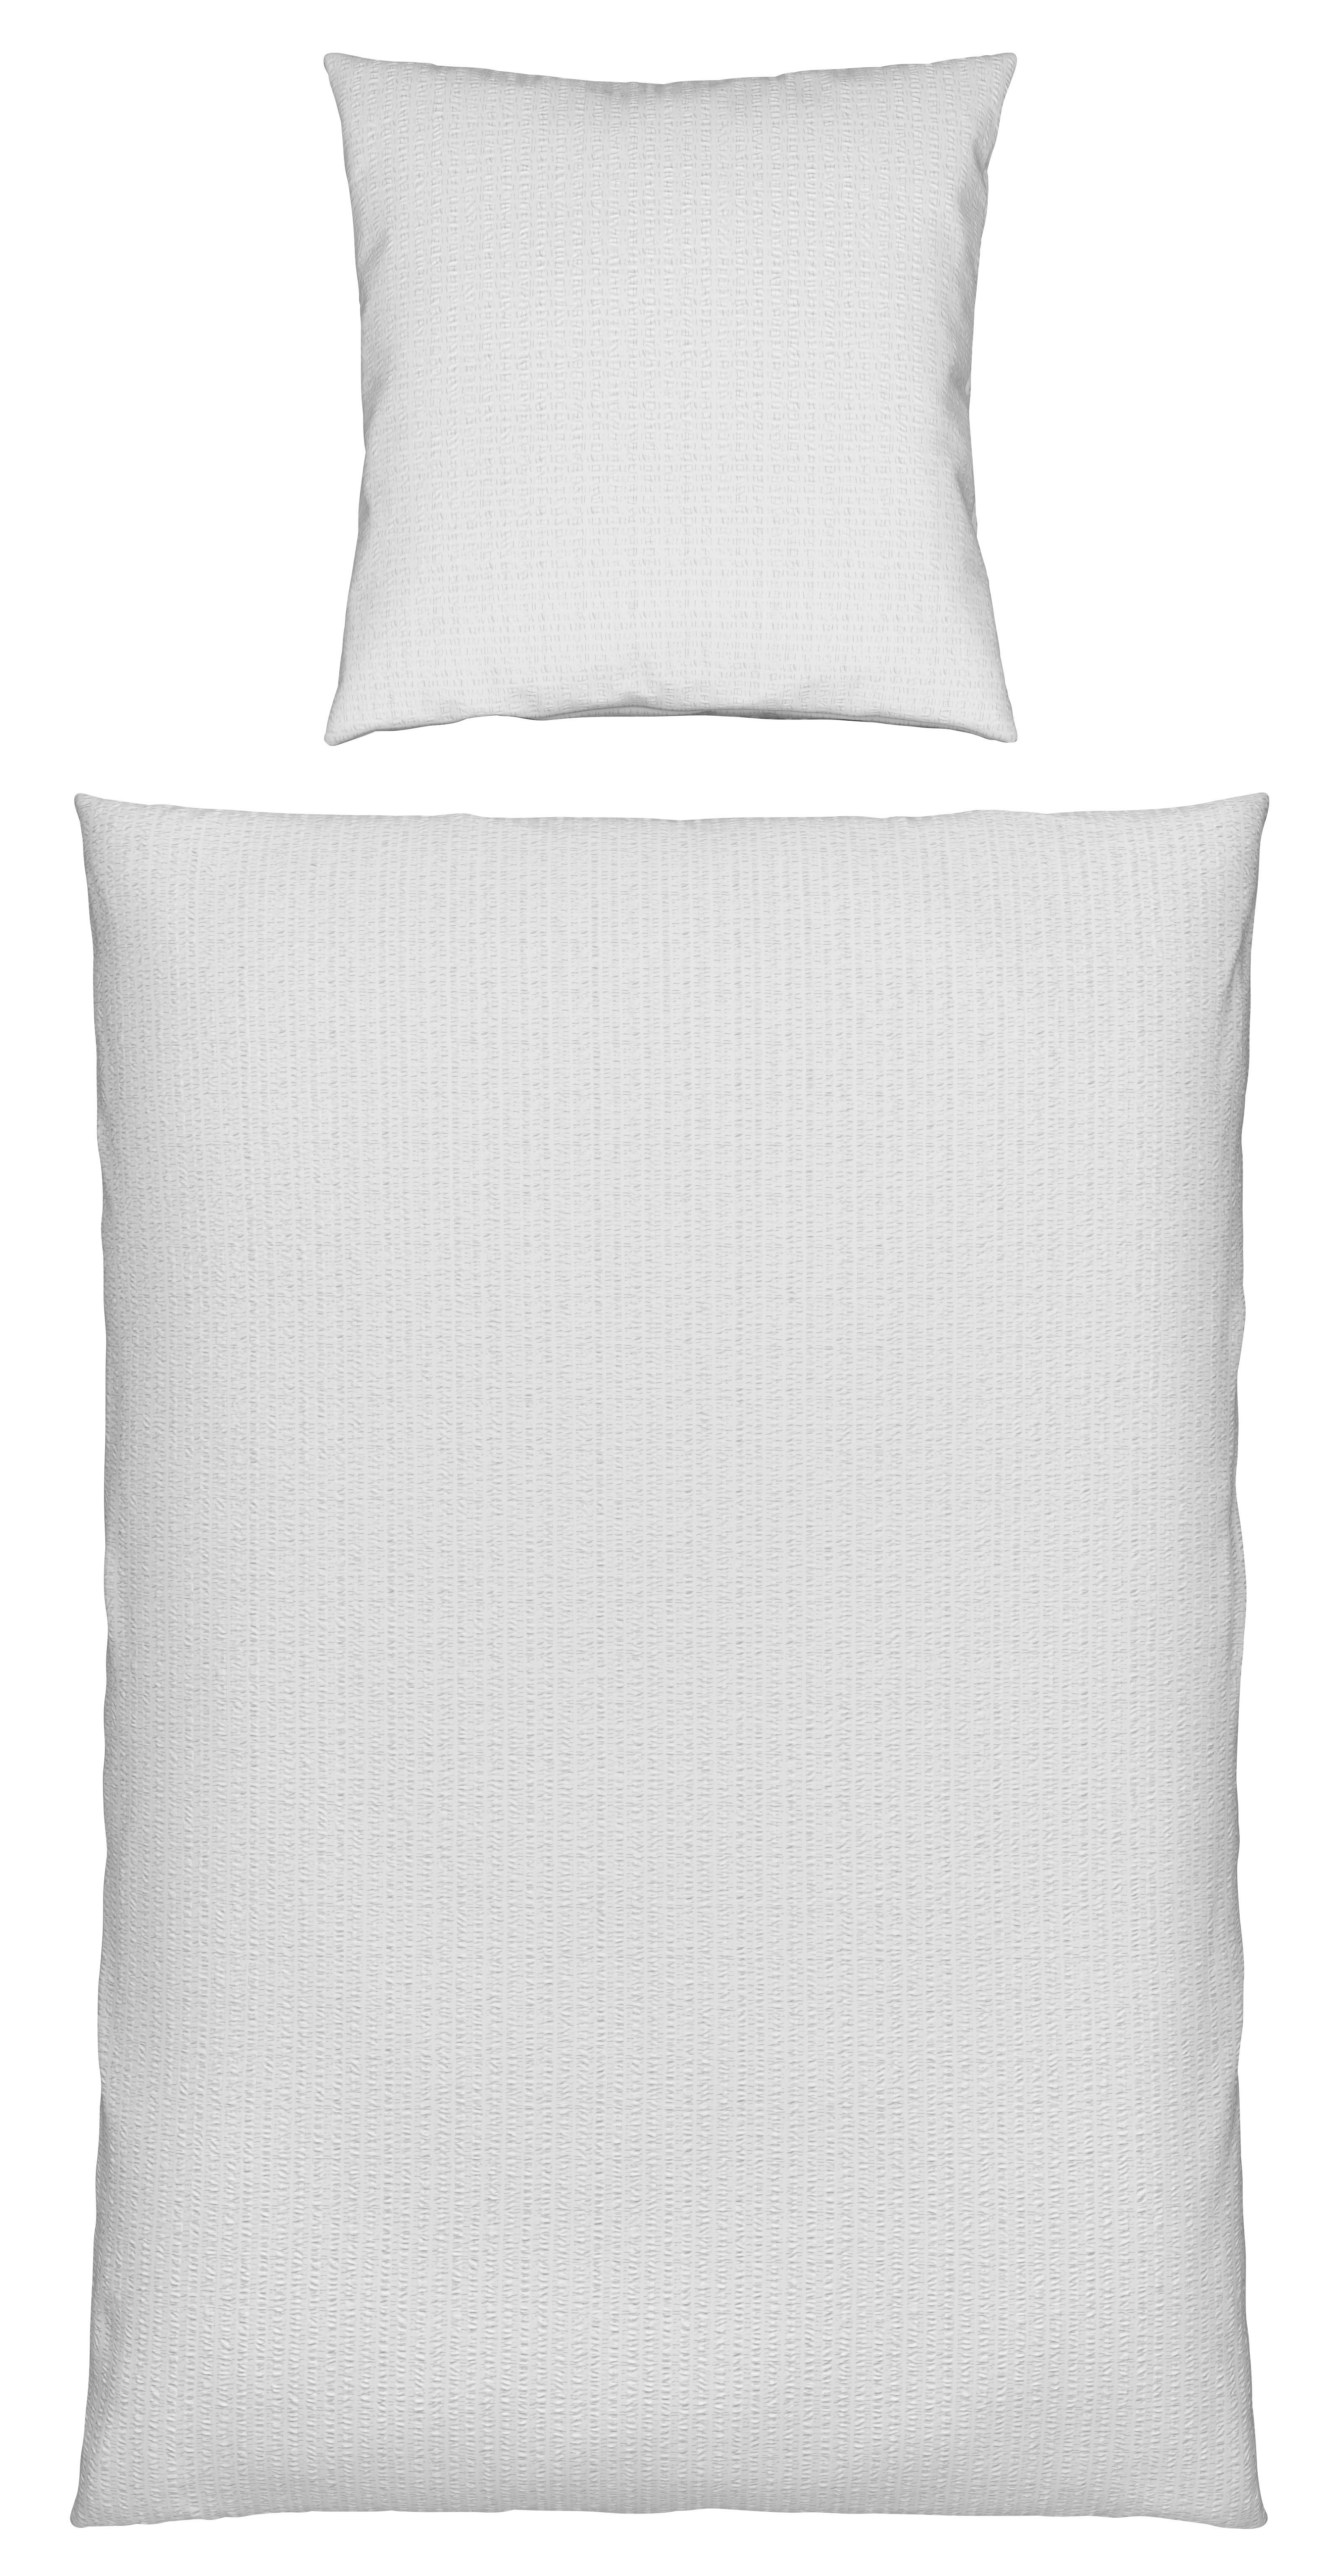 Bettwäsche Gisi in Weiß ca. 135x200cm - Weiß, KONVENTIONELL, Textil (135/200cm) - Modern Living